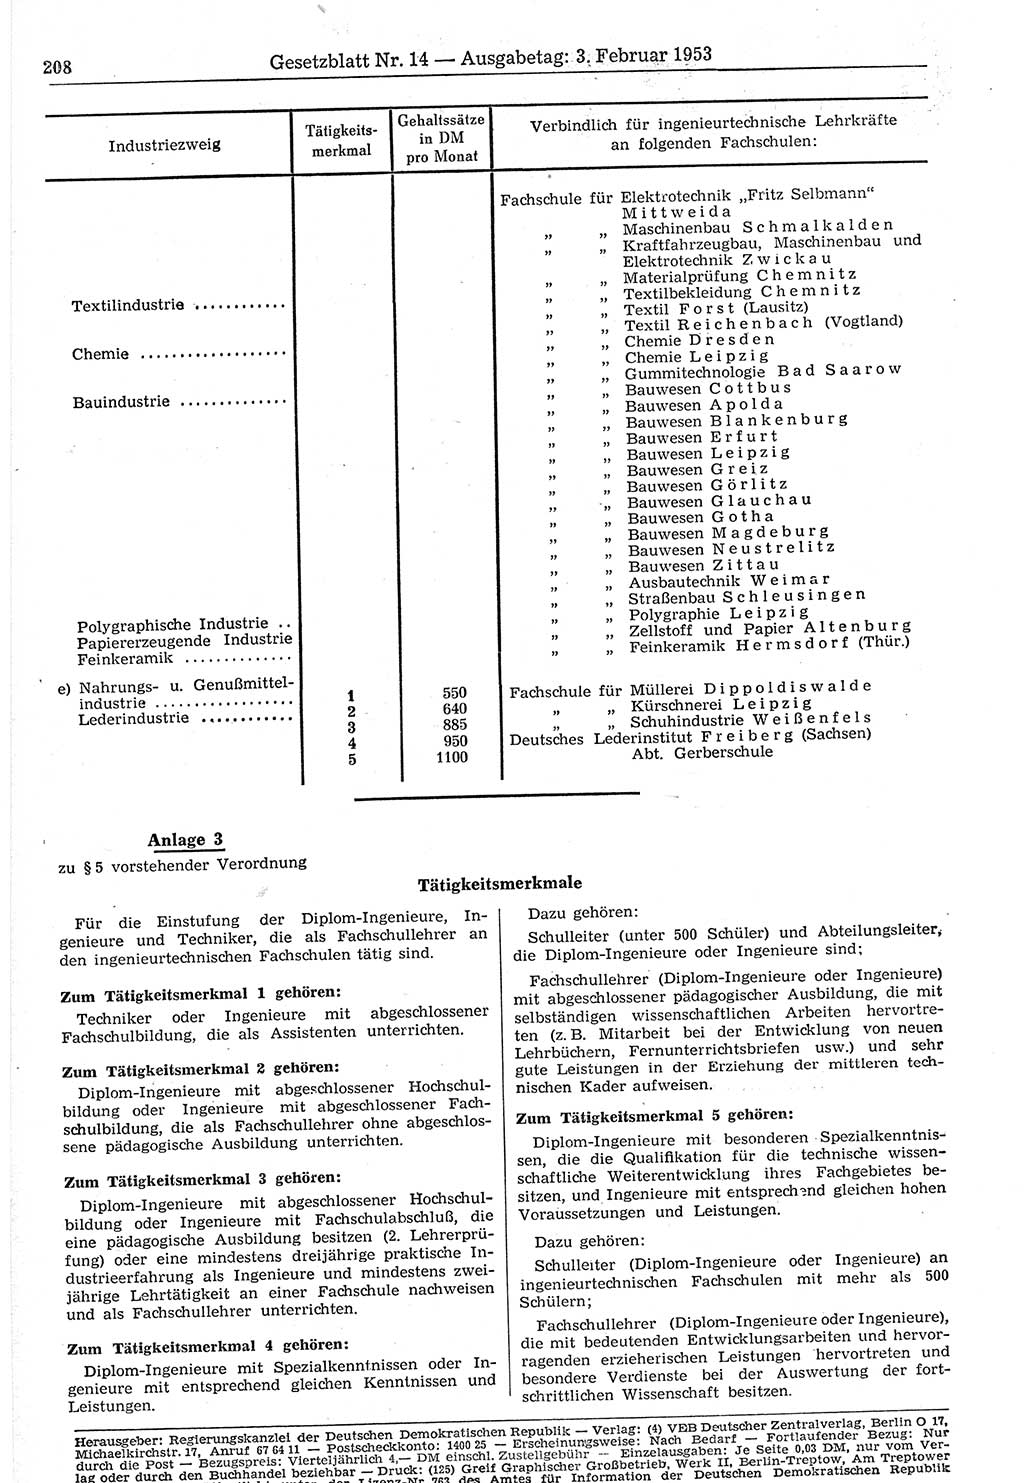 Gesetzblatt (GBl.) der Deutschen Demokratischen Republik (DDR) 1953, Seite 208 (GBl. DDR 1953, S. 208)